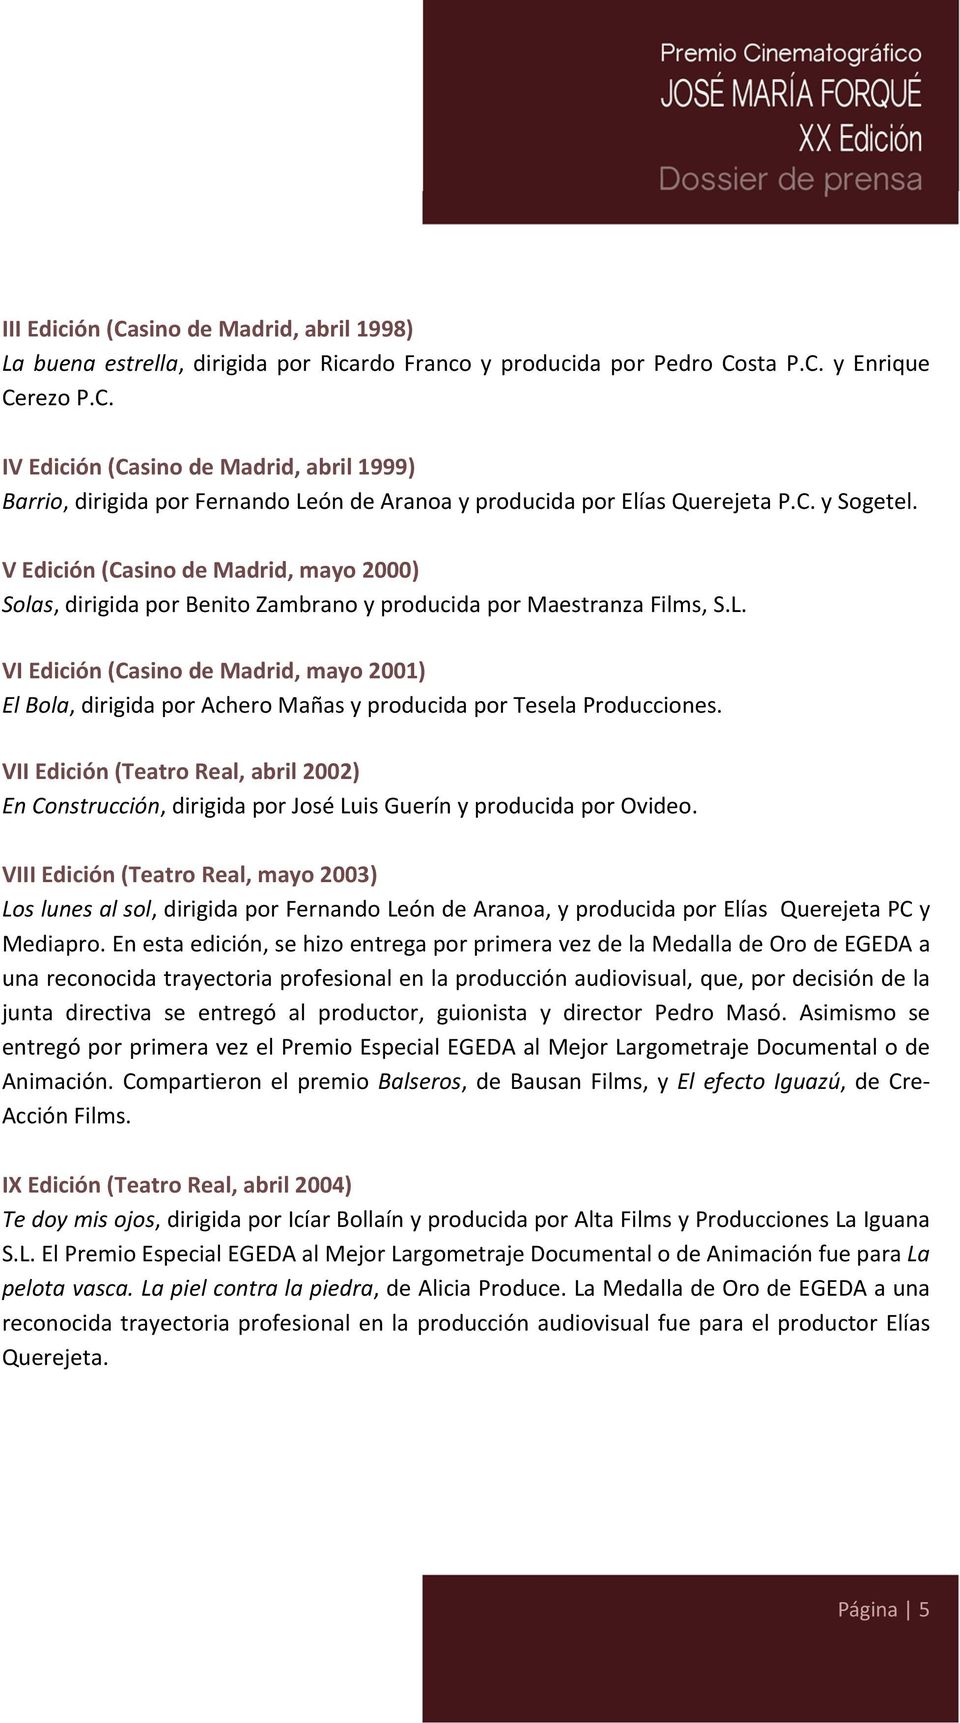 VI Edición (Casino de Madrid, mayo 2001) El Bola, dirigida por Achero Mañas y producida por Tesela Producciones.